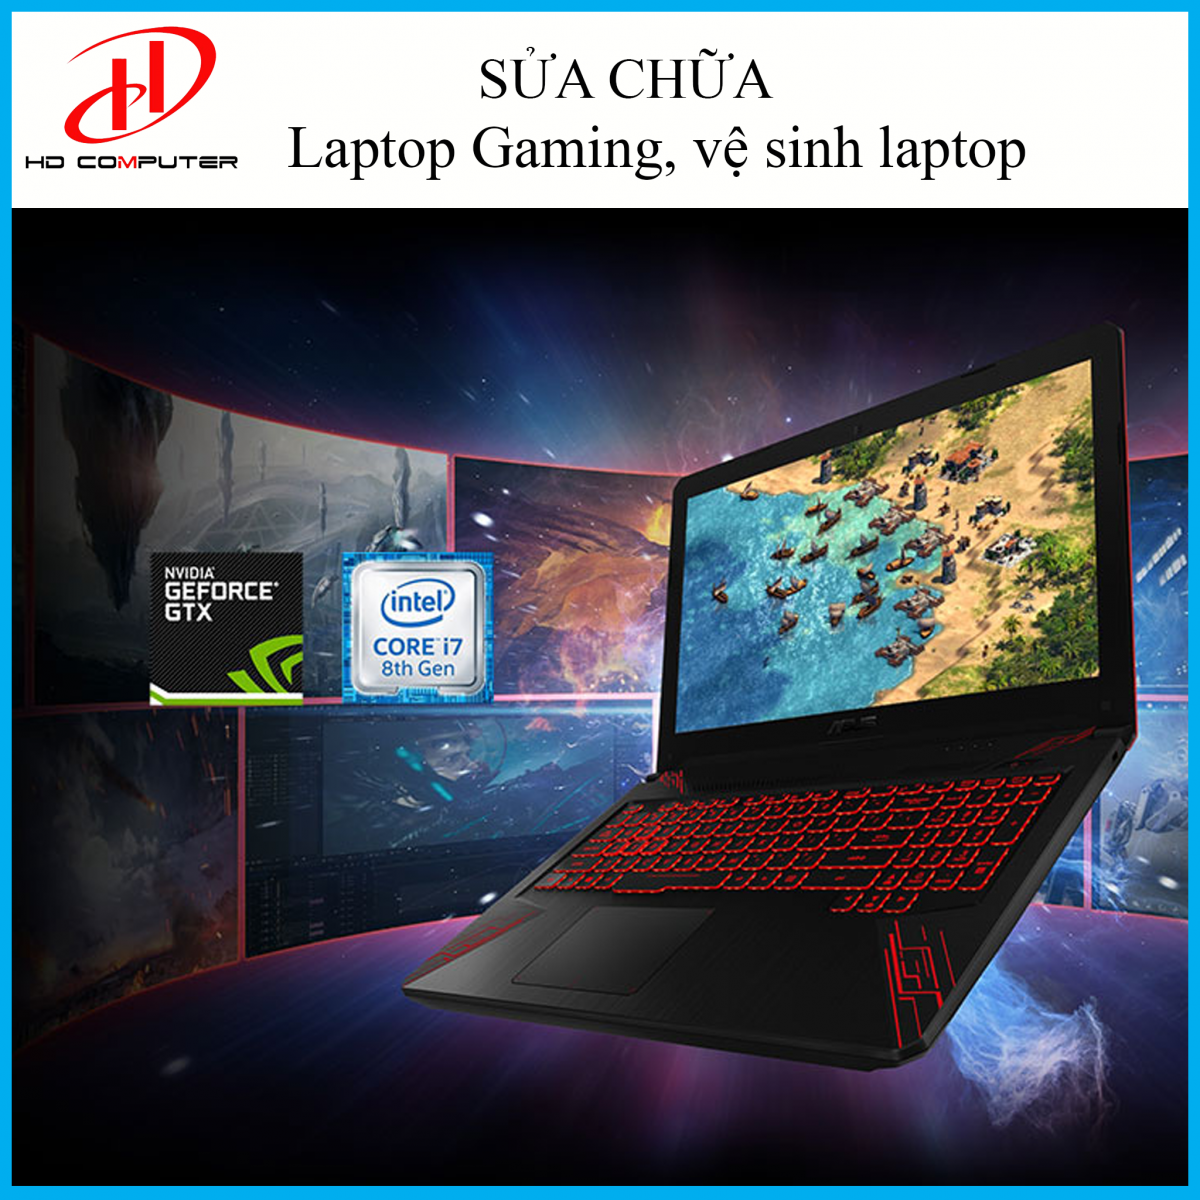 HD Computer – Sửa Chữa Laptop Gaming tại tphcm Gaming